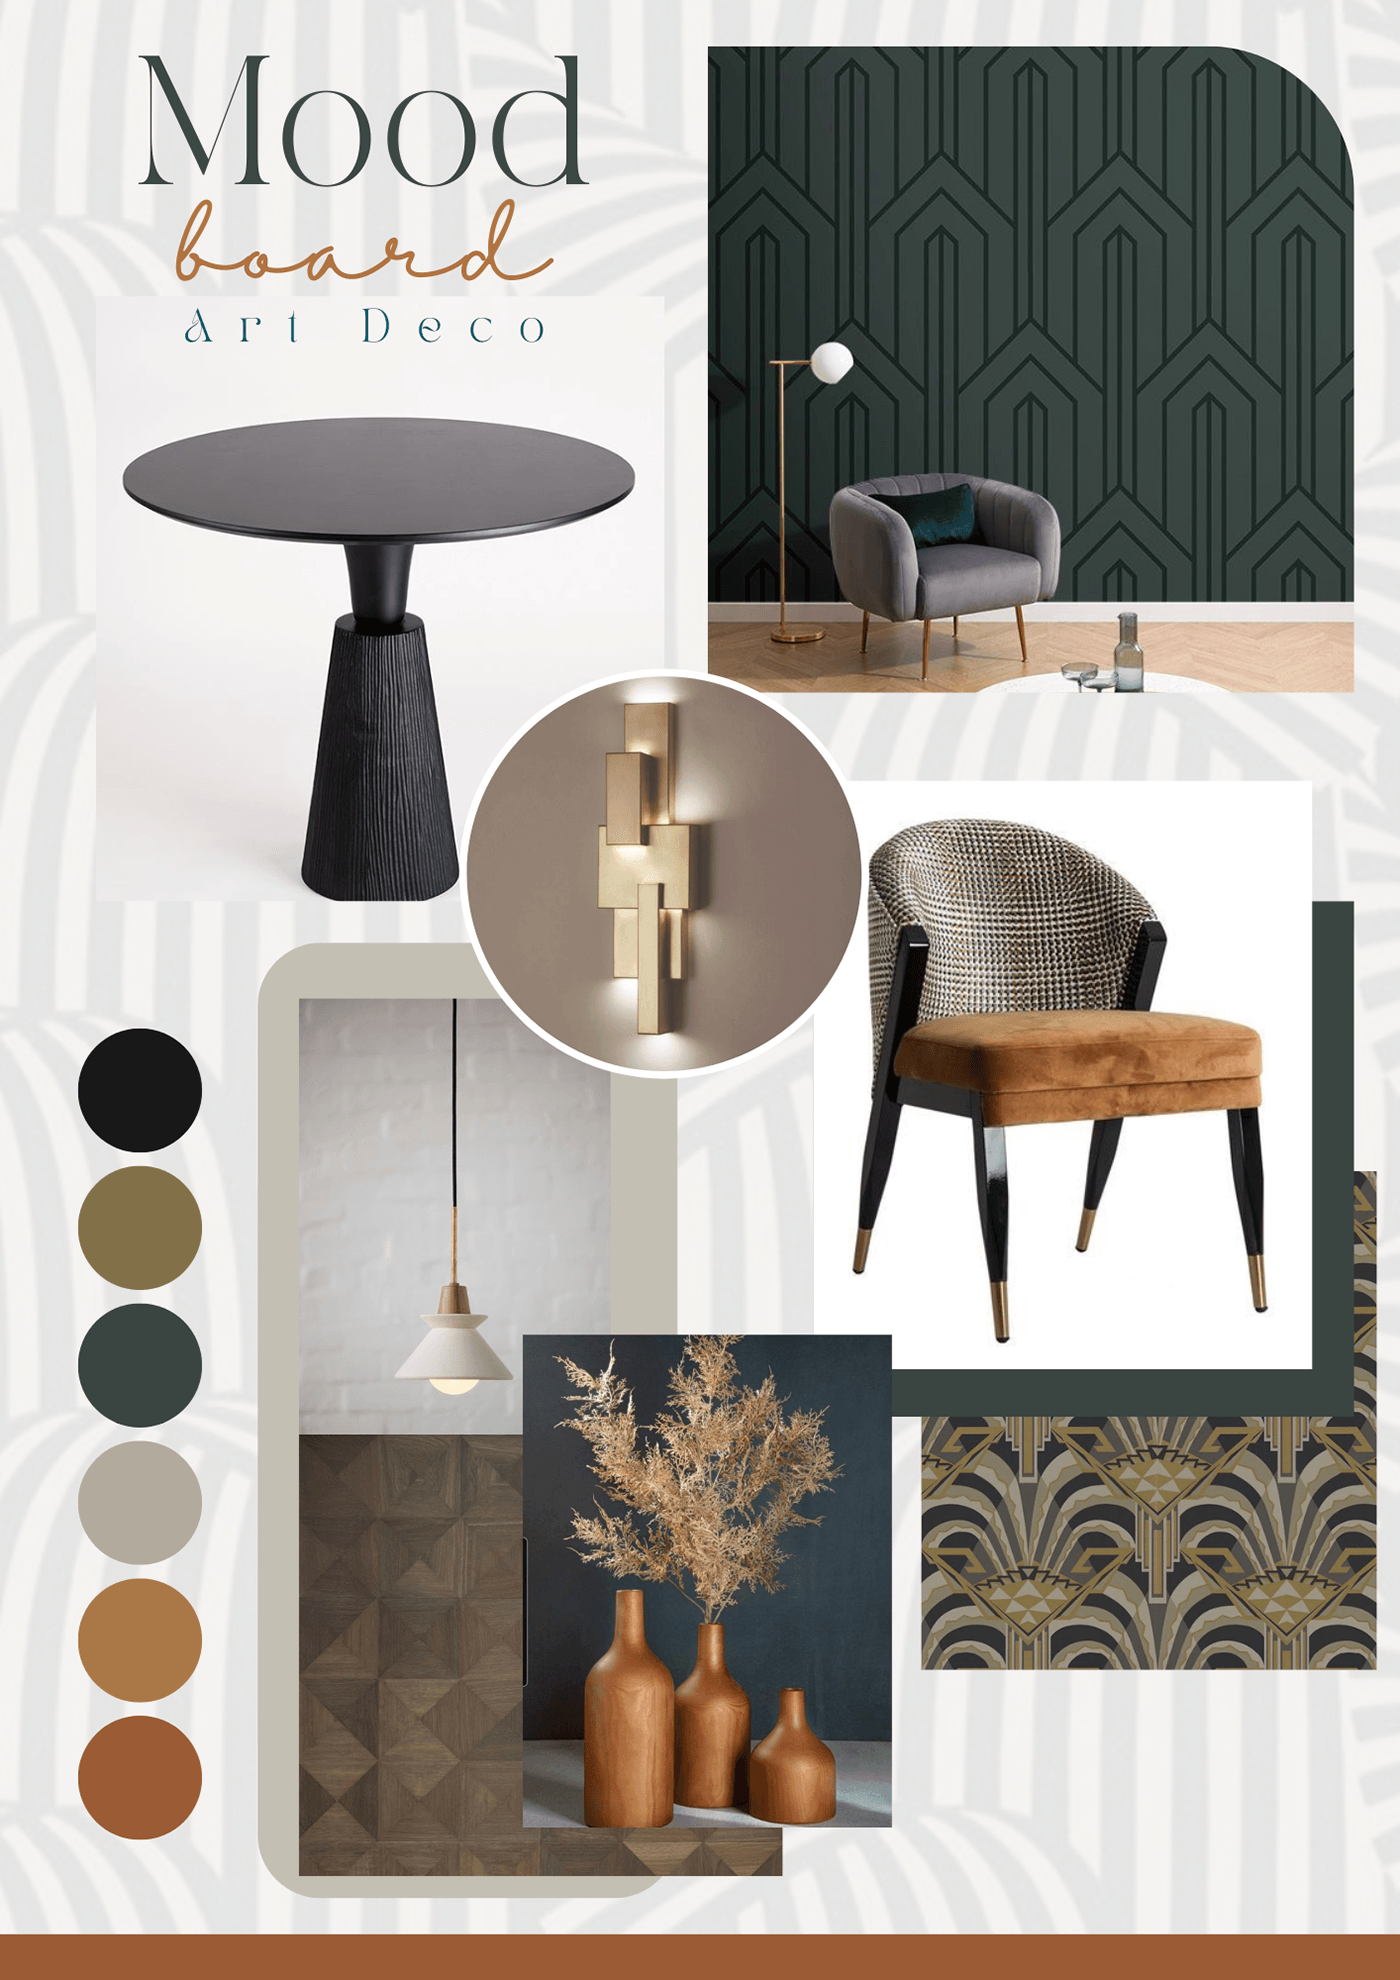 FF&E interior design  architecture design moodboard collage inspiration creative